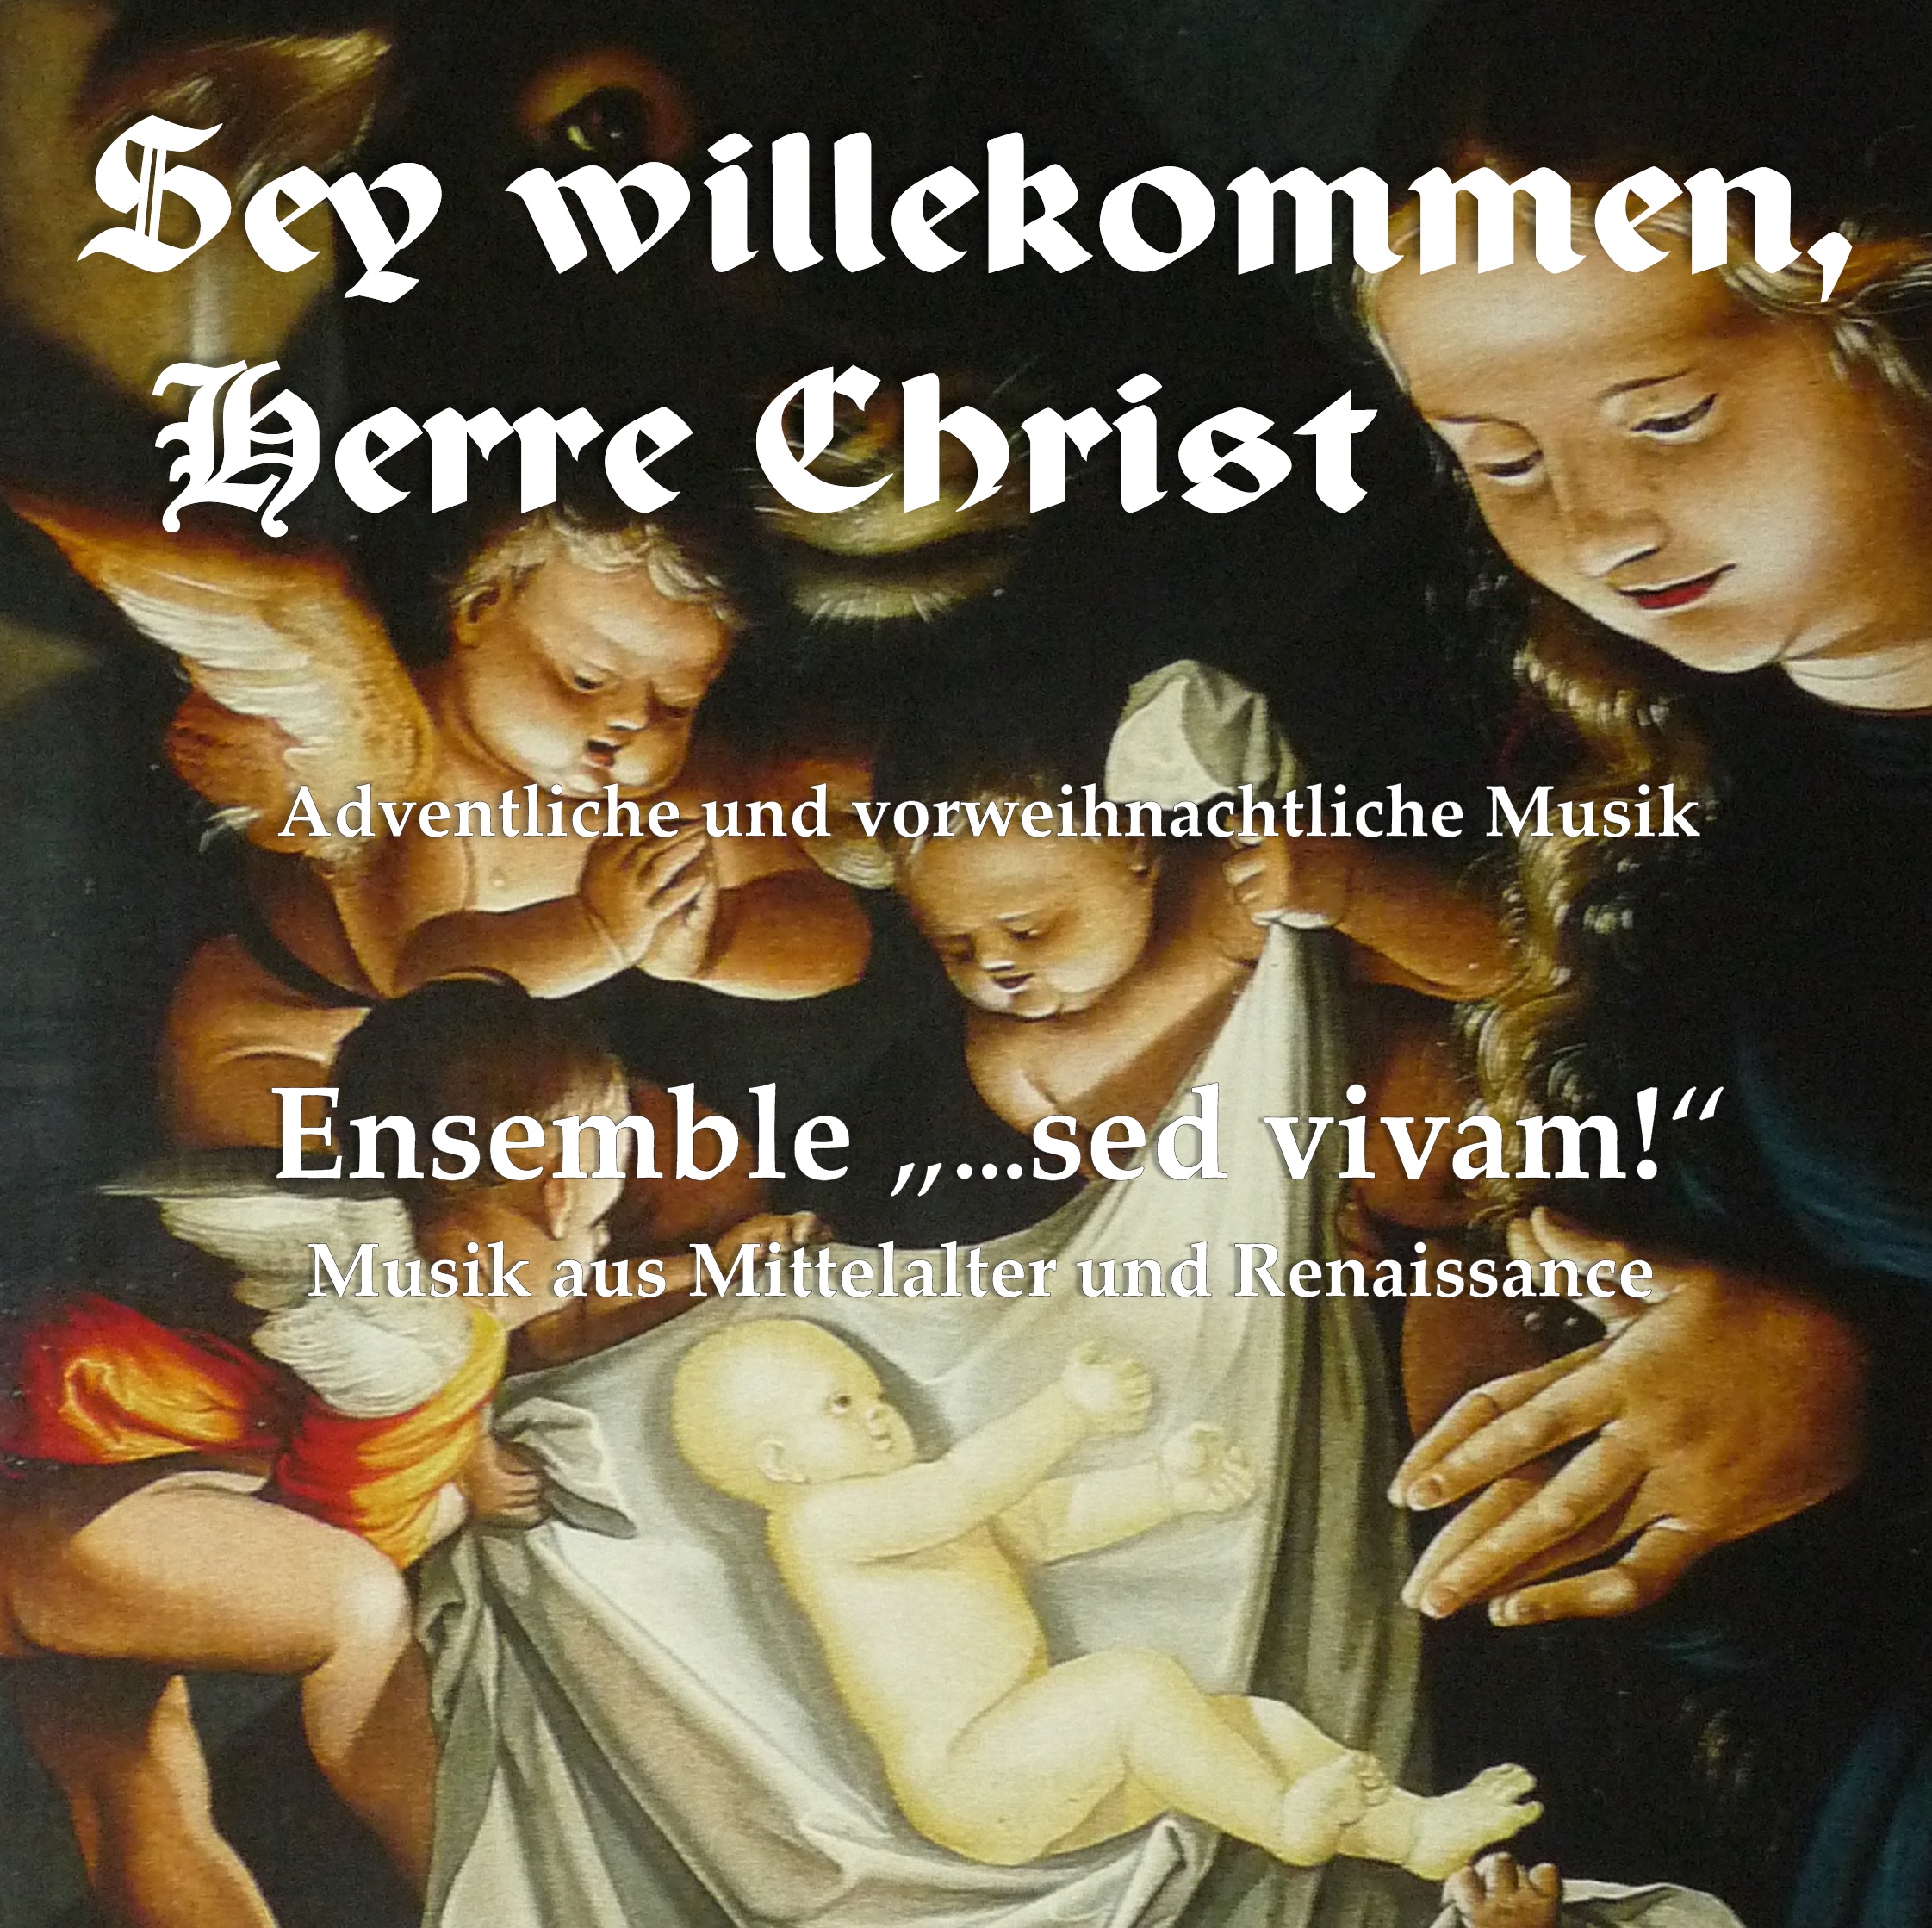 Kirchenmusik, Plakatausschnitt Ensemble "... sed vivam"